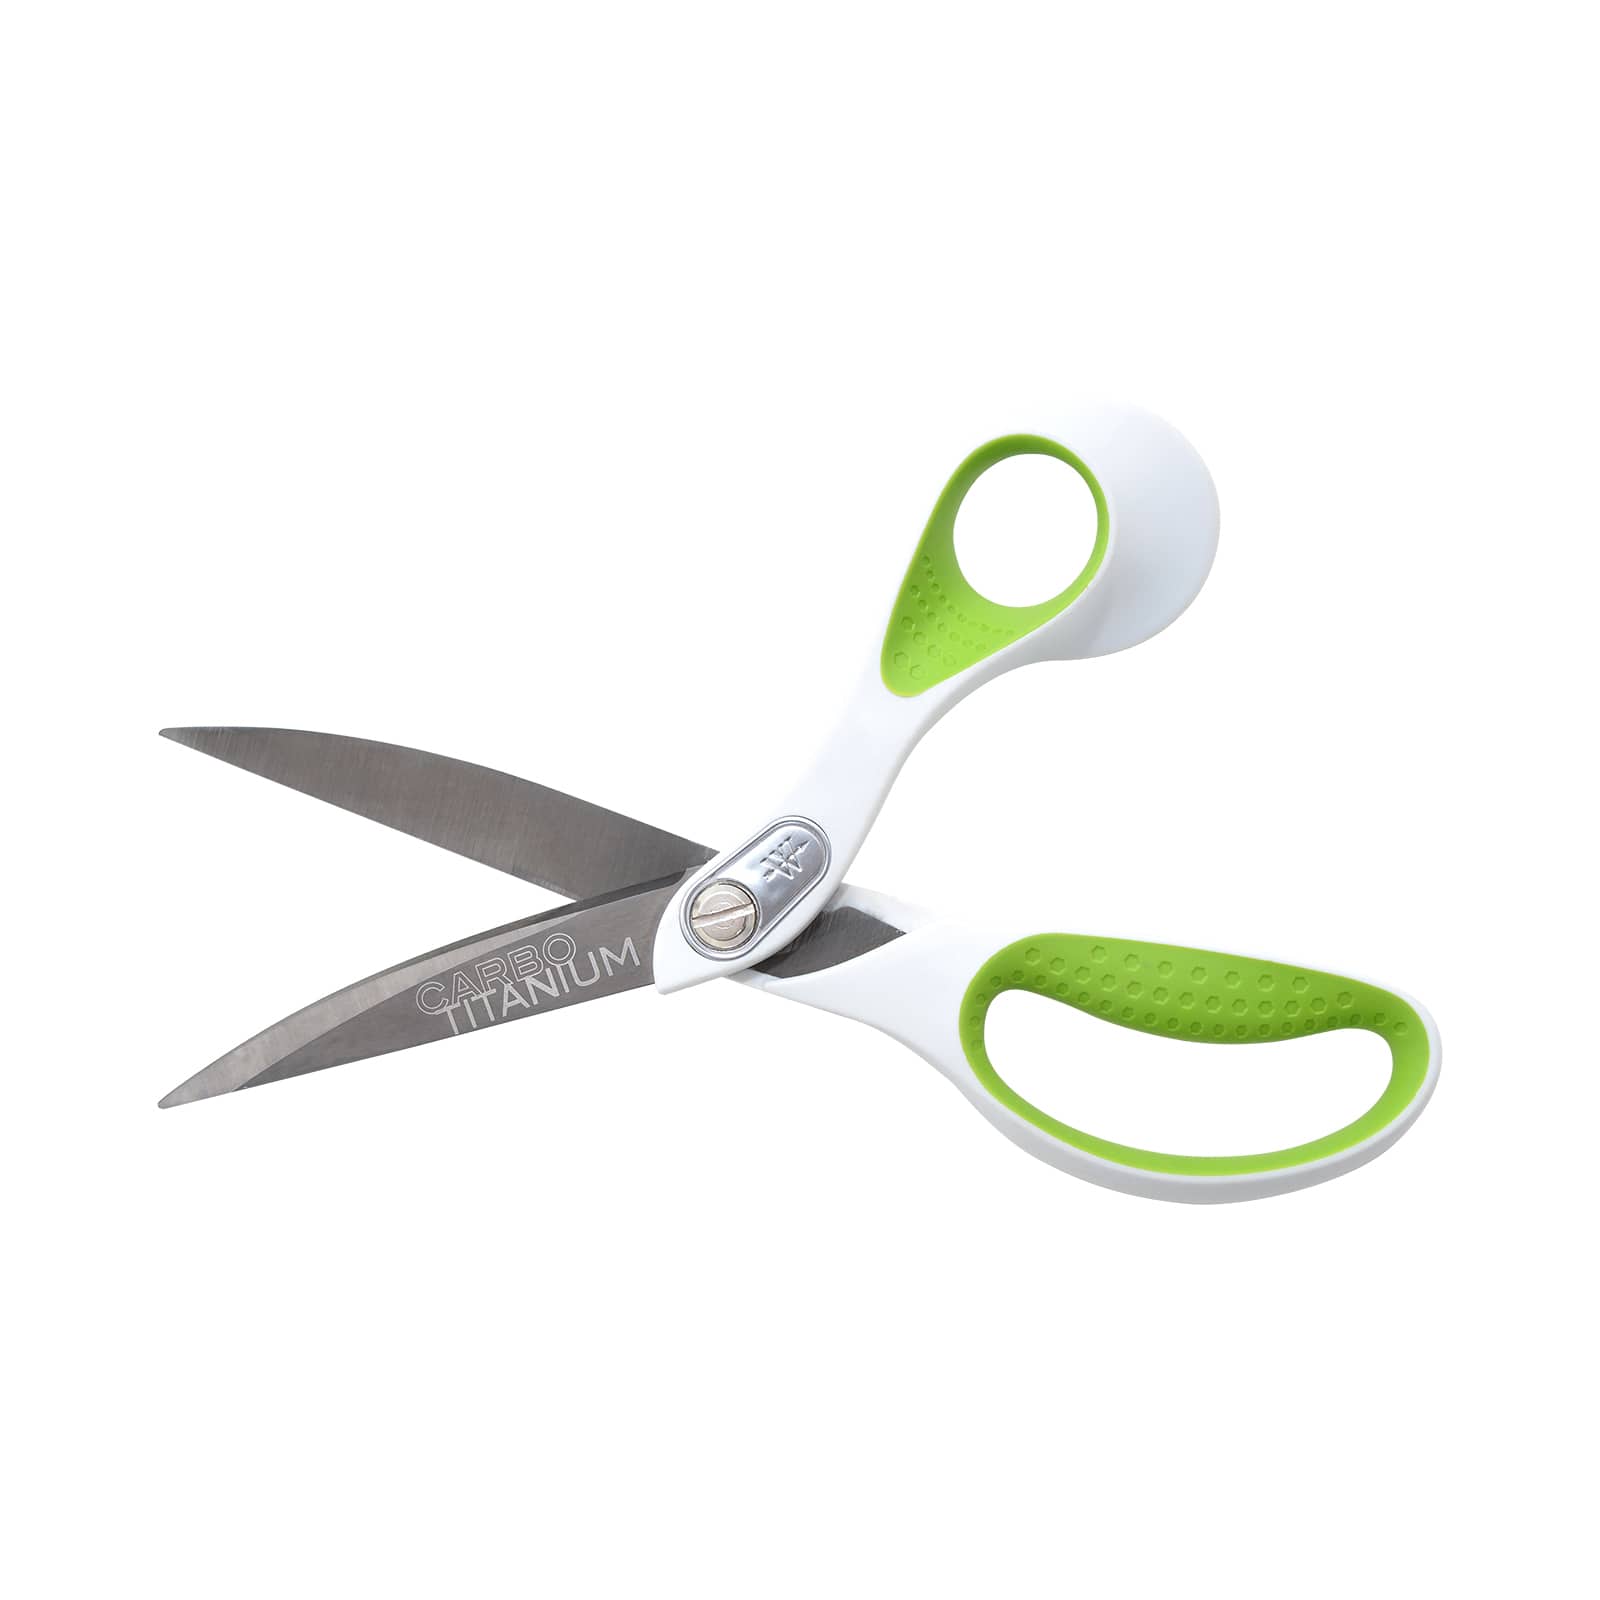 Westcott&#xAE; Carbo Titanium Bent Scissors